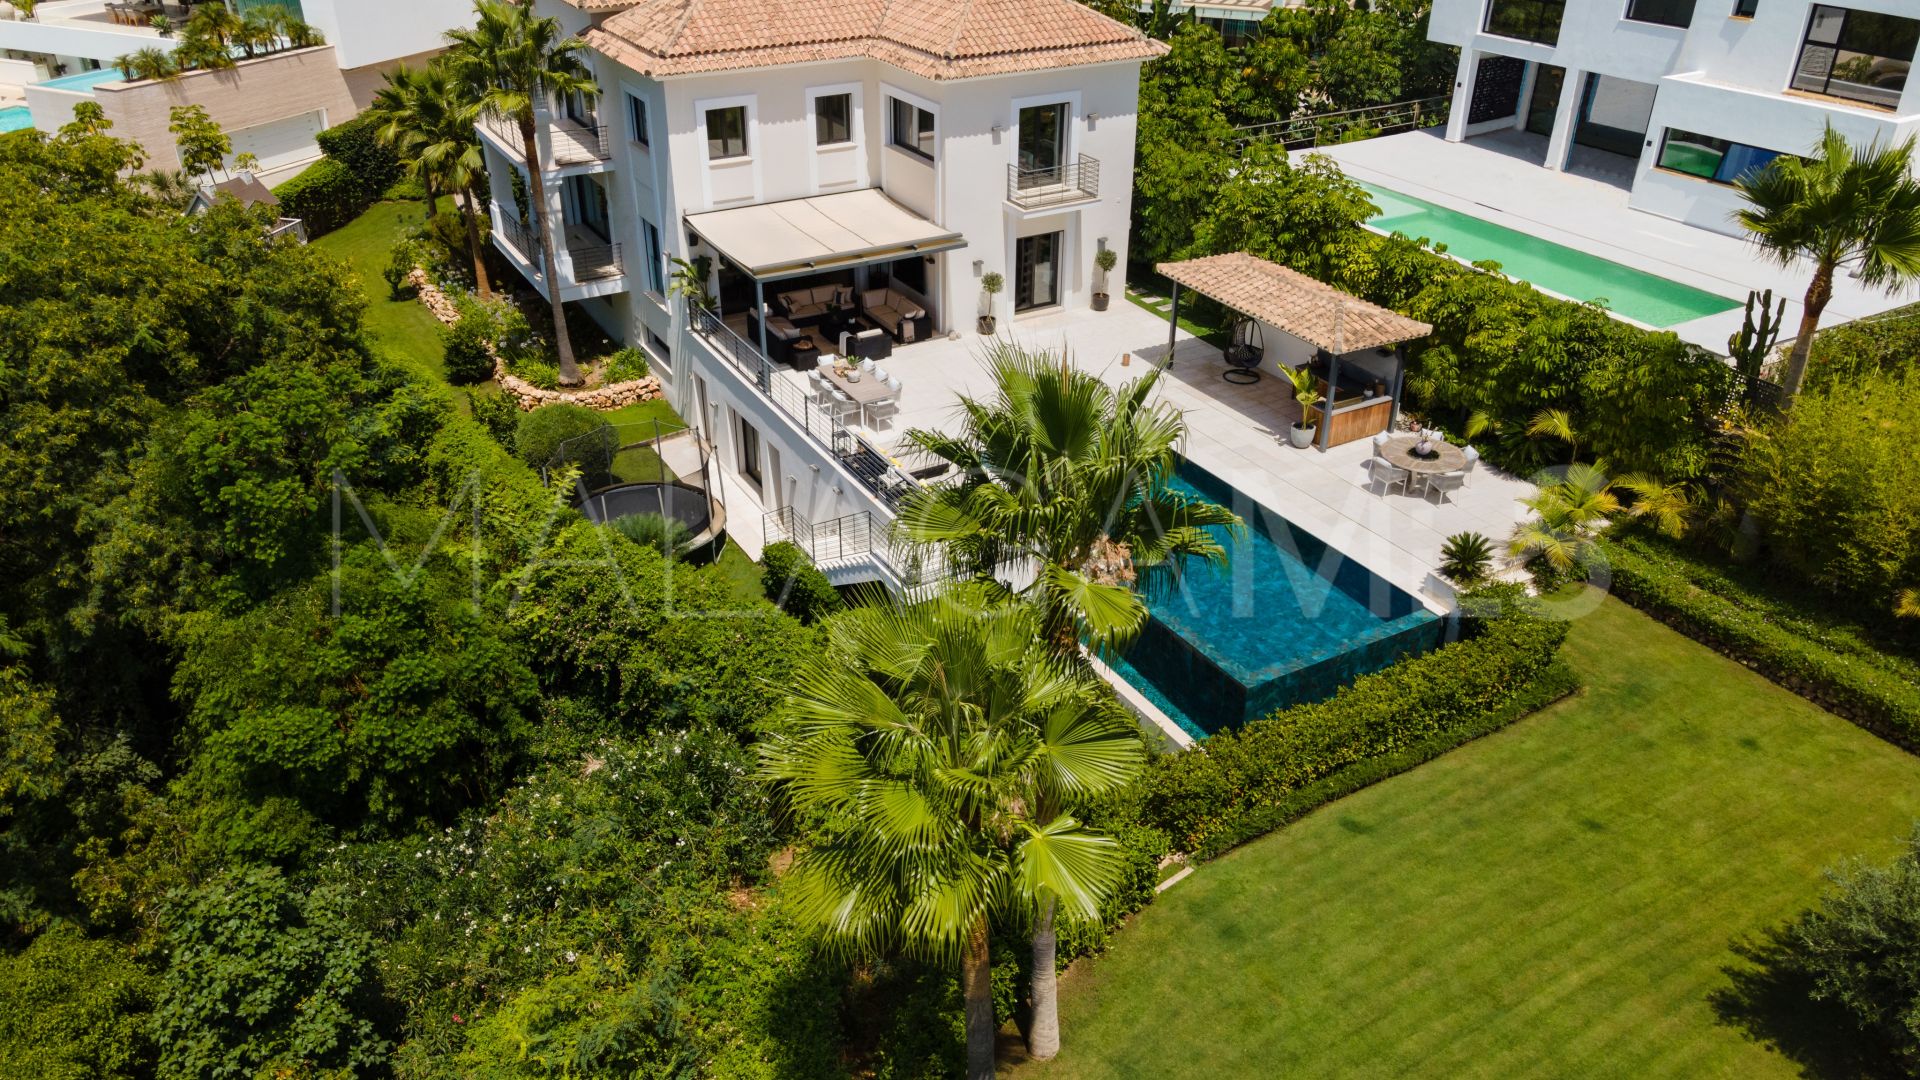 Villa for sale in El Herrojo with 6 bedrooms